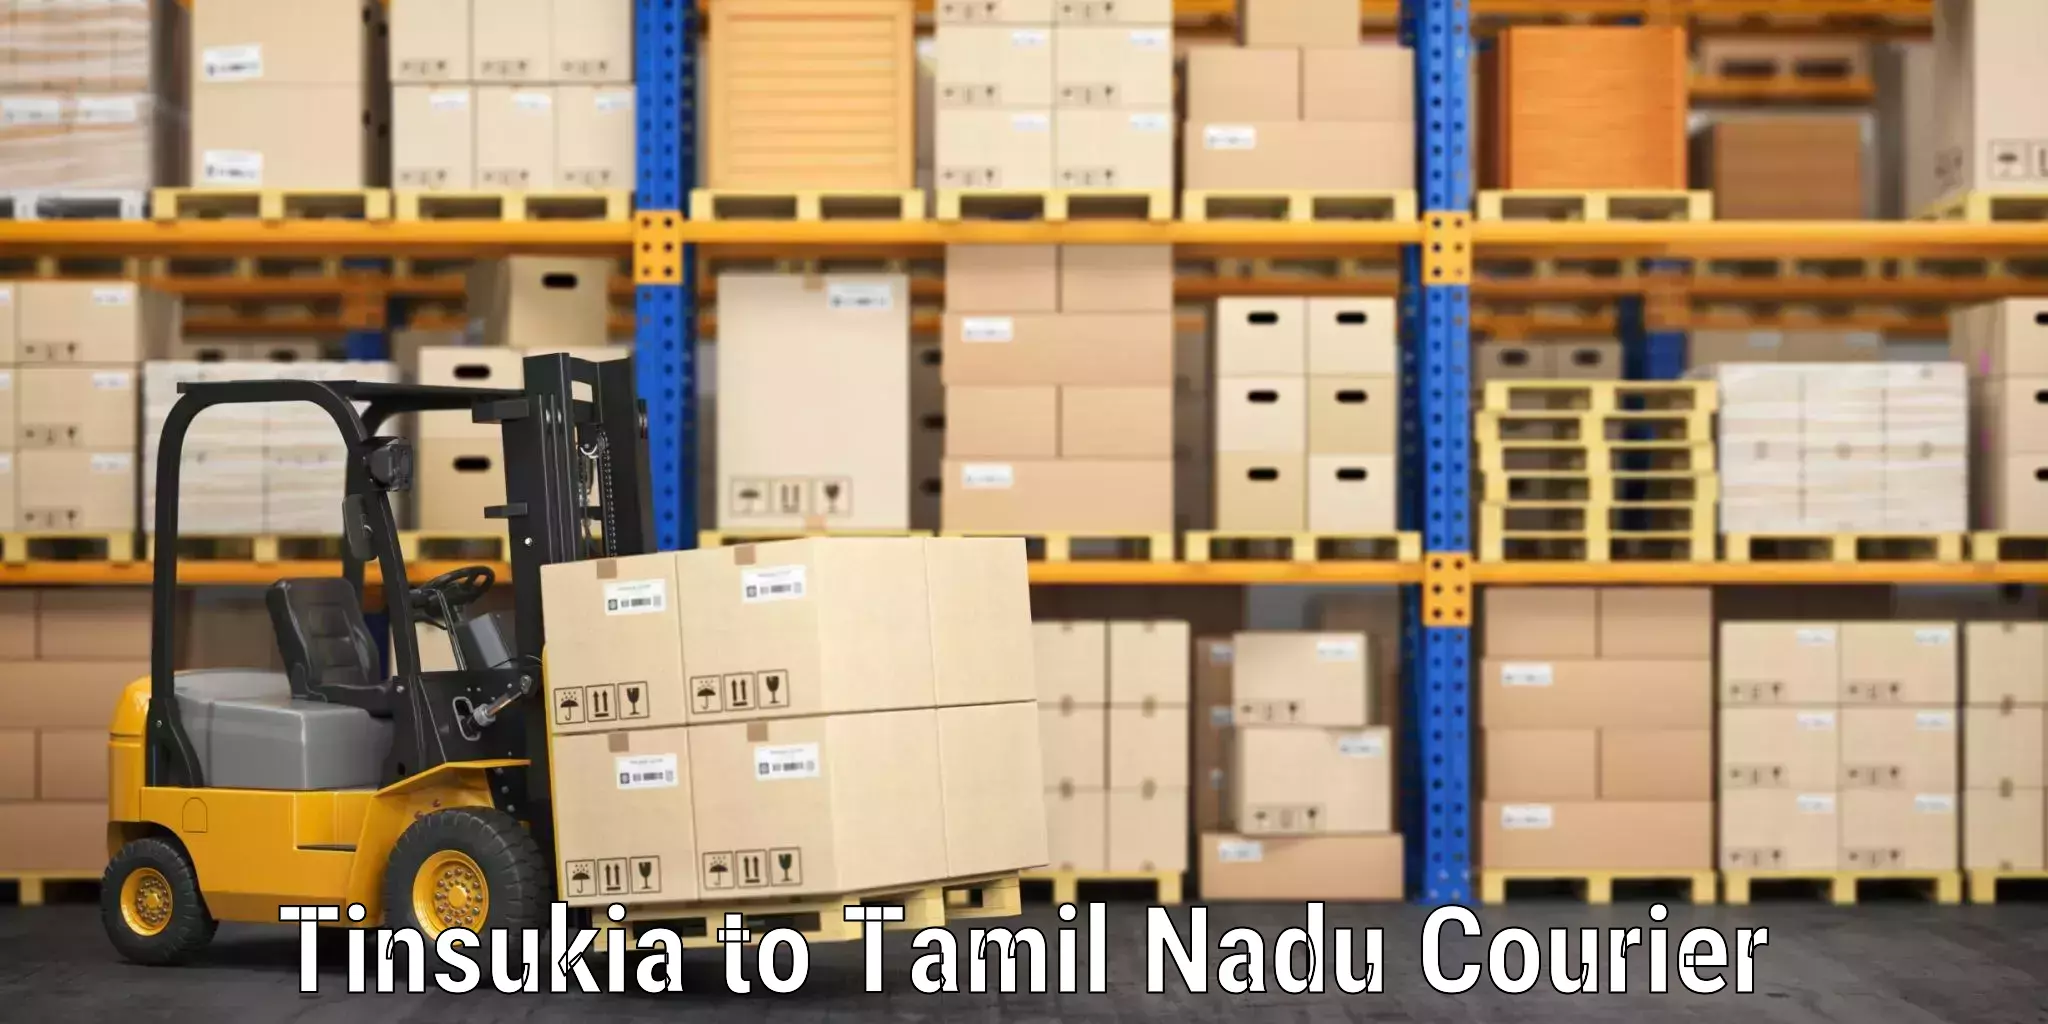 Baggage courier strategy Tinsukia to Sankarankoil